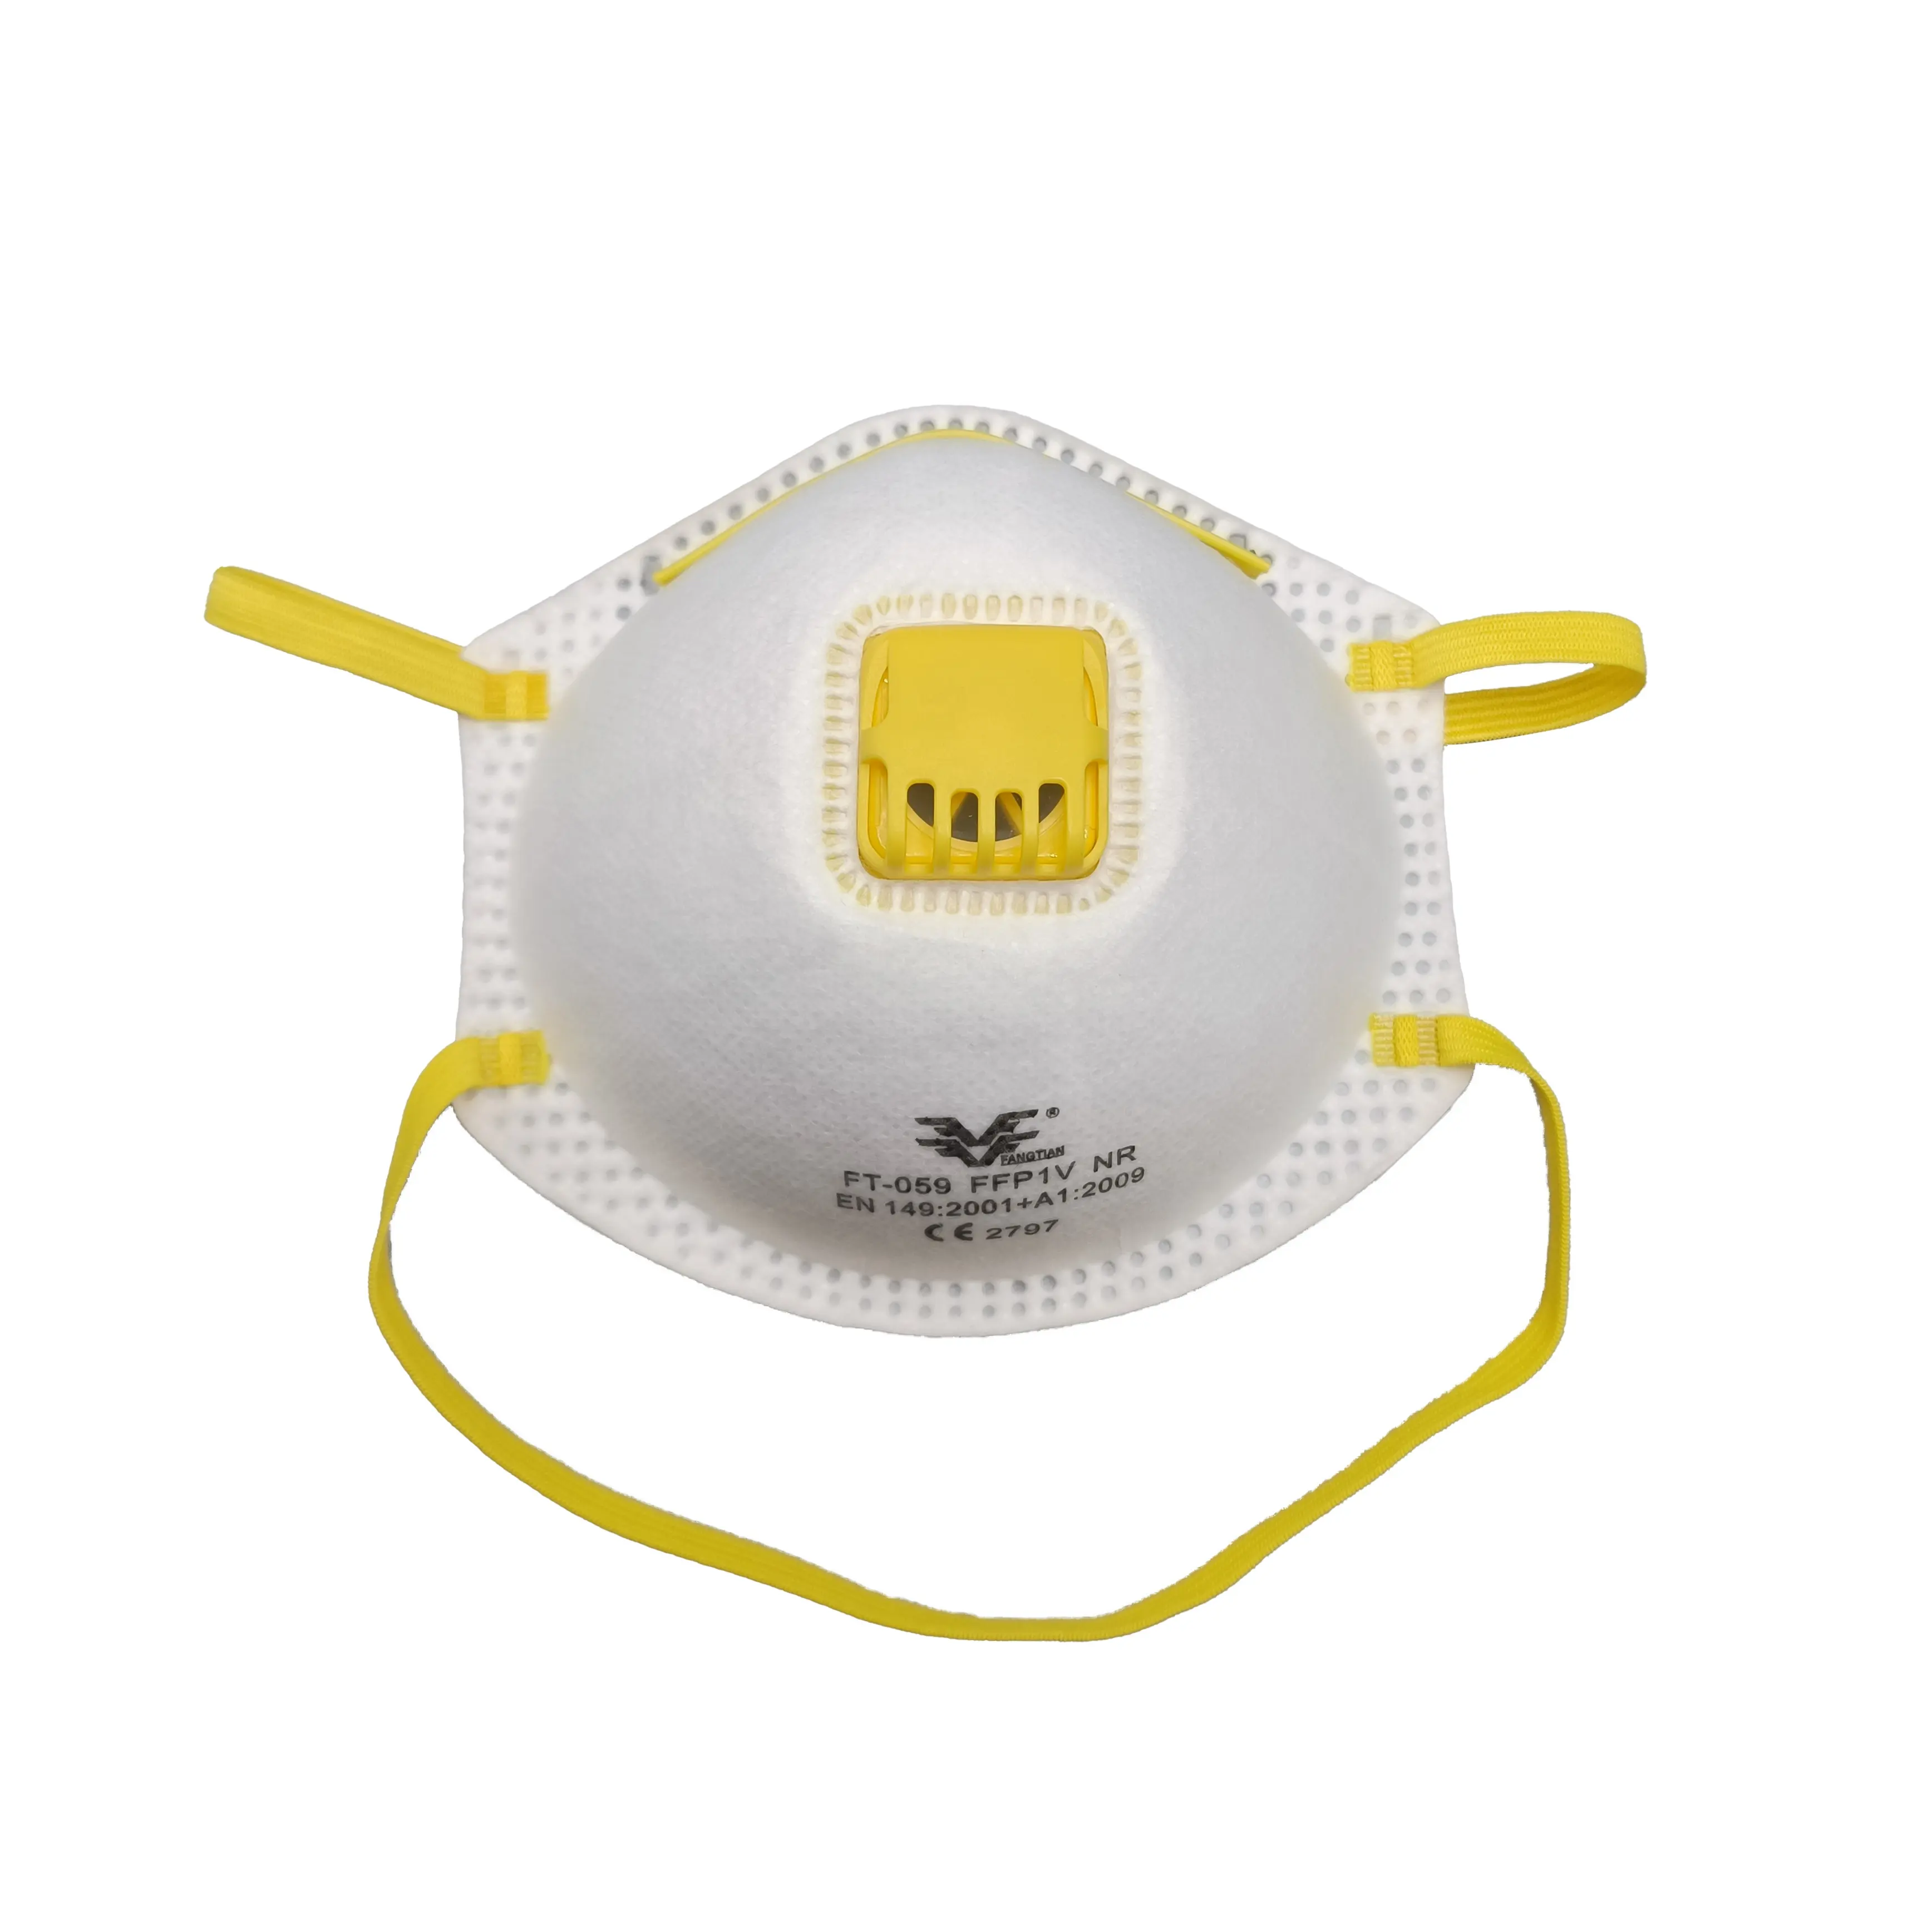 Özel Logo beyaz CE toz maskesi FFP1 NR FFP1 solunum valfi ile vana yüz maskesi ile solunum